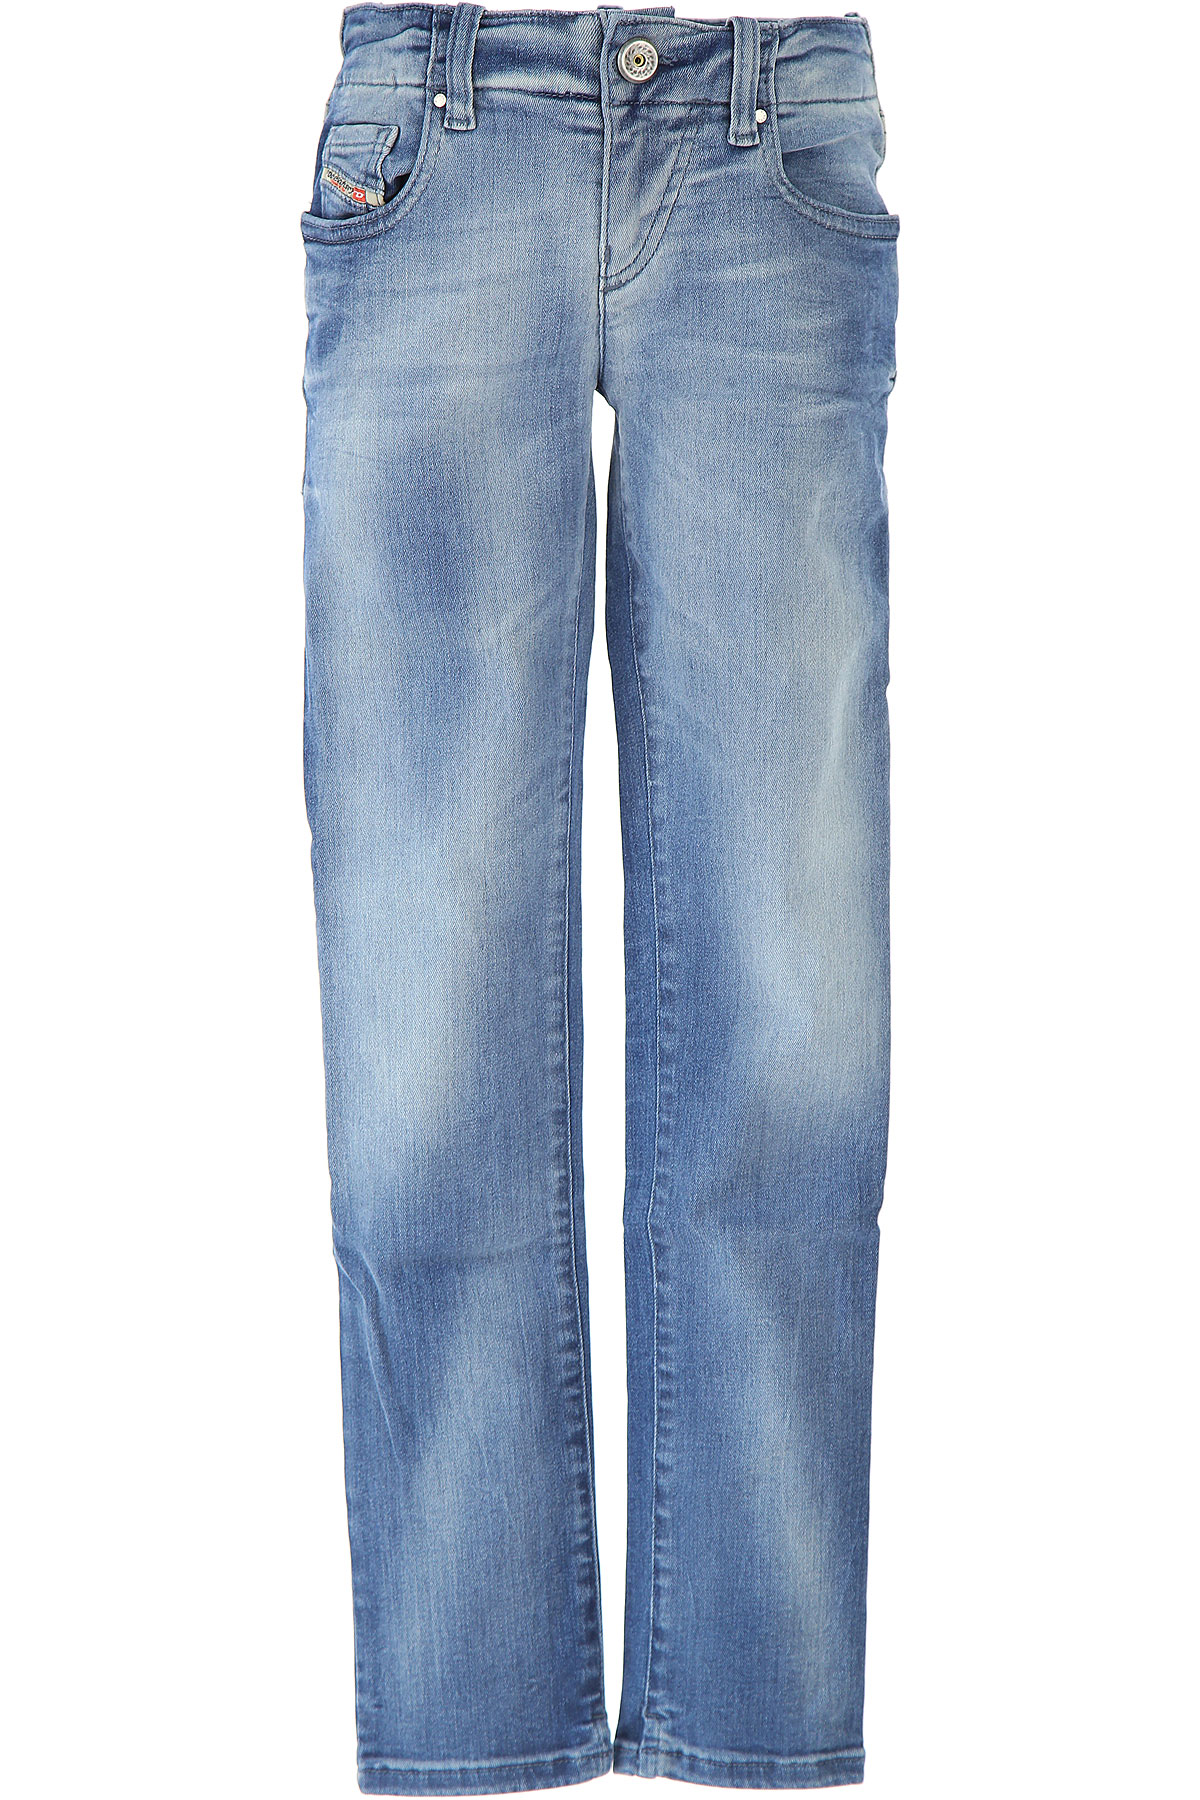 Diesel Kinder Jeans für Mädchen Günstig im Outlet Sale, Denim Blau, Baumwolle, 2017, 6Y 8Y